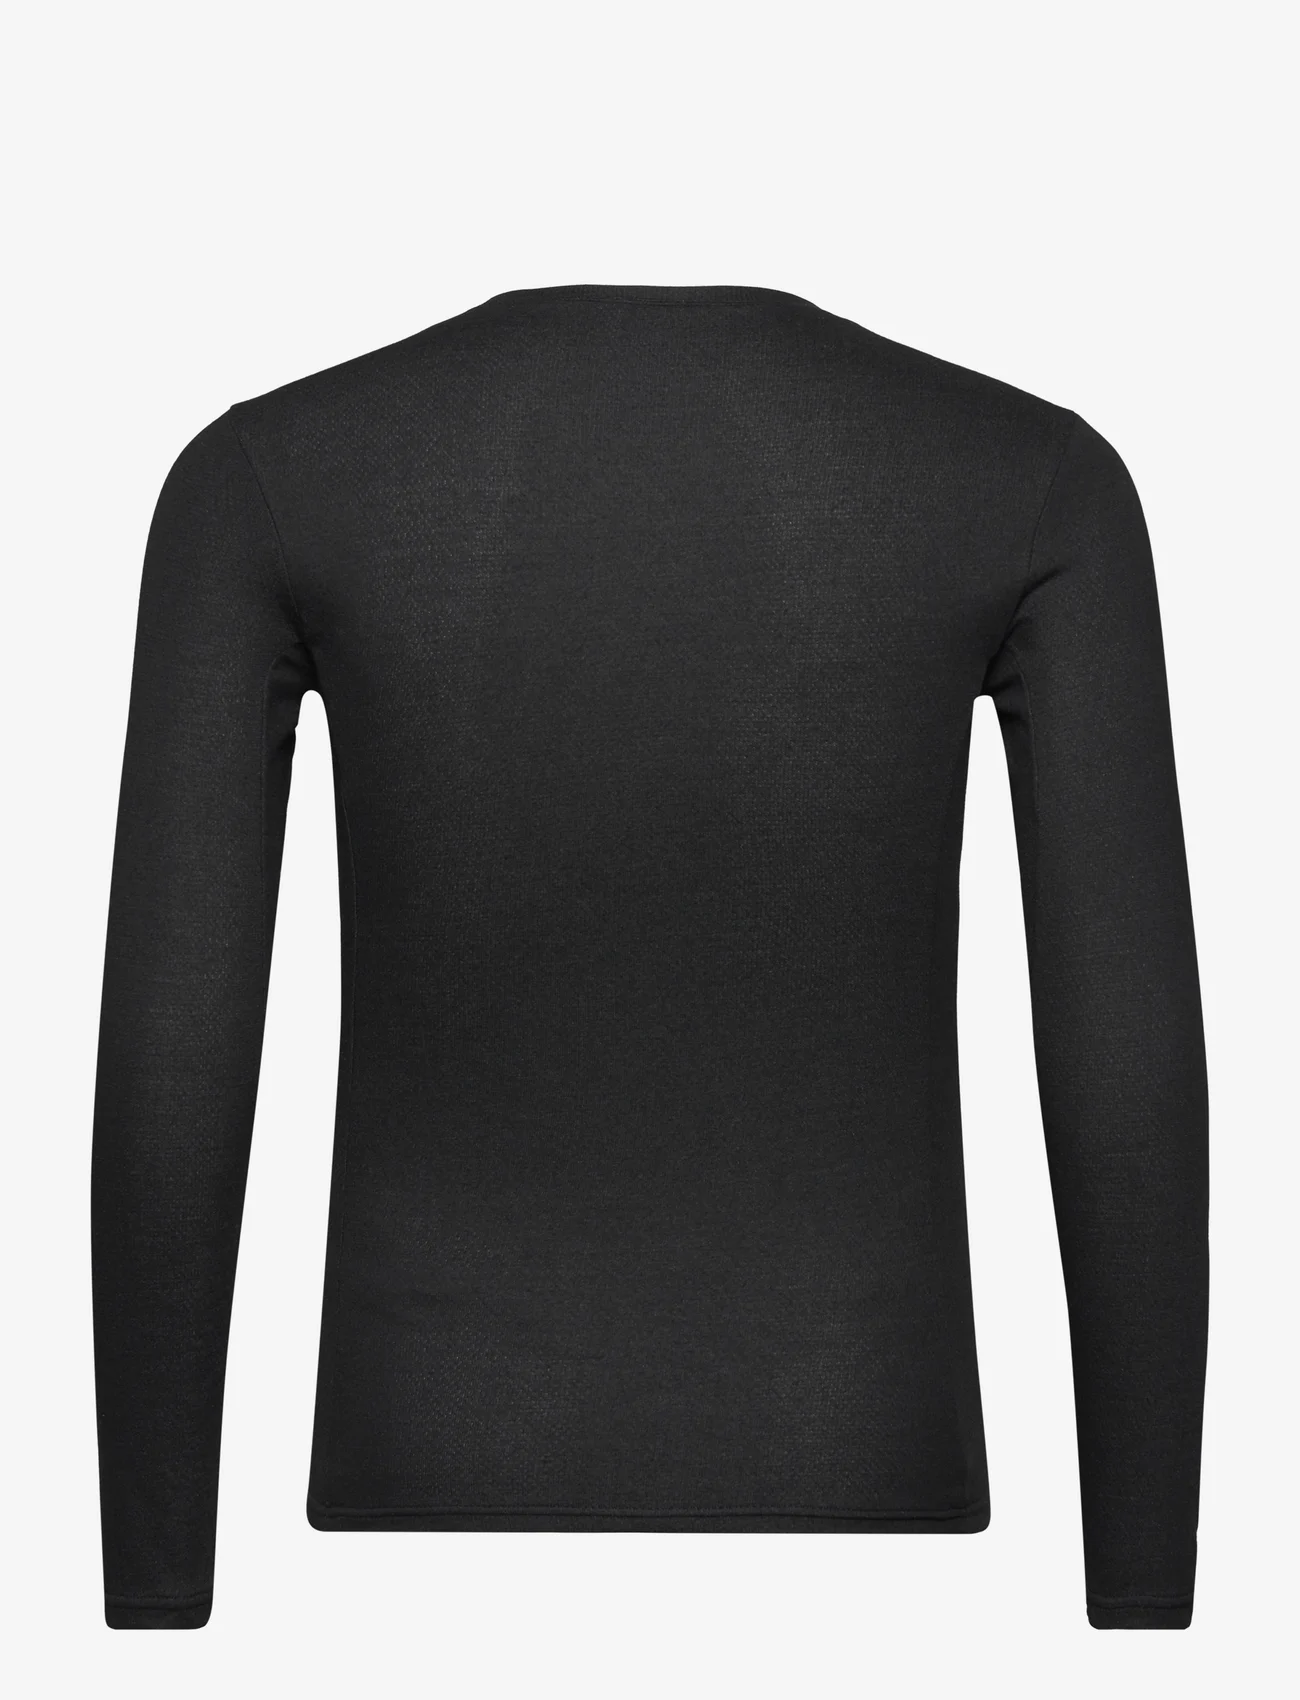 The North Face - M EASY L/S CREW NECK - laisvalaikio marškiniai - tnf black - 1